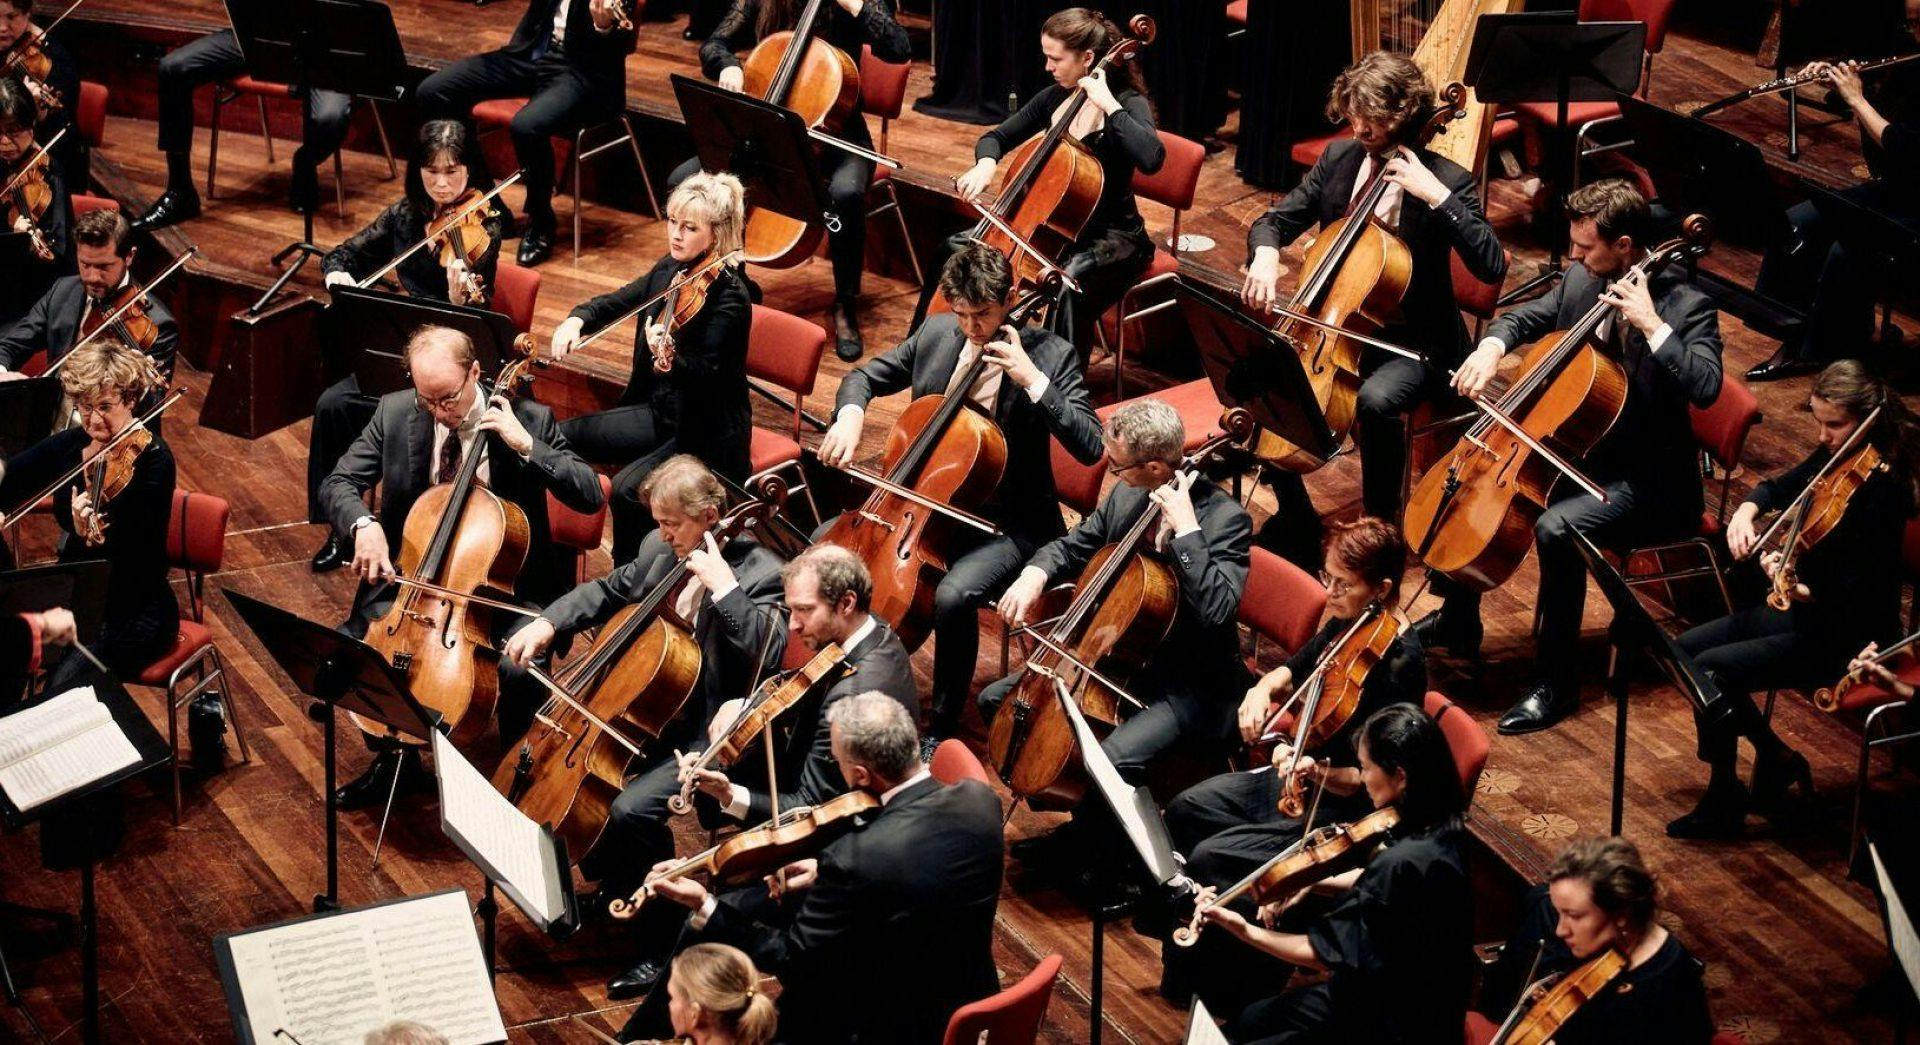 Dinis Sousa conducts the Concertgebouw Orchestra in Brahms' Ein deutsches Requiem